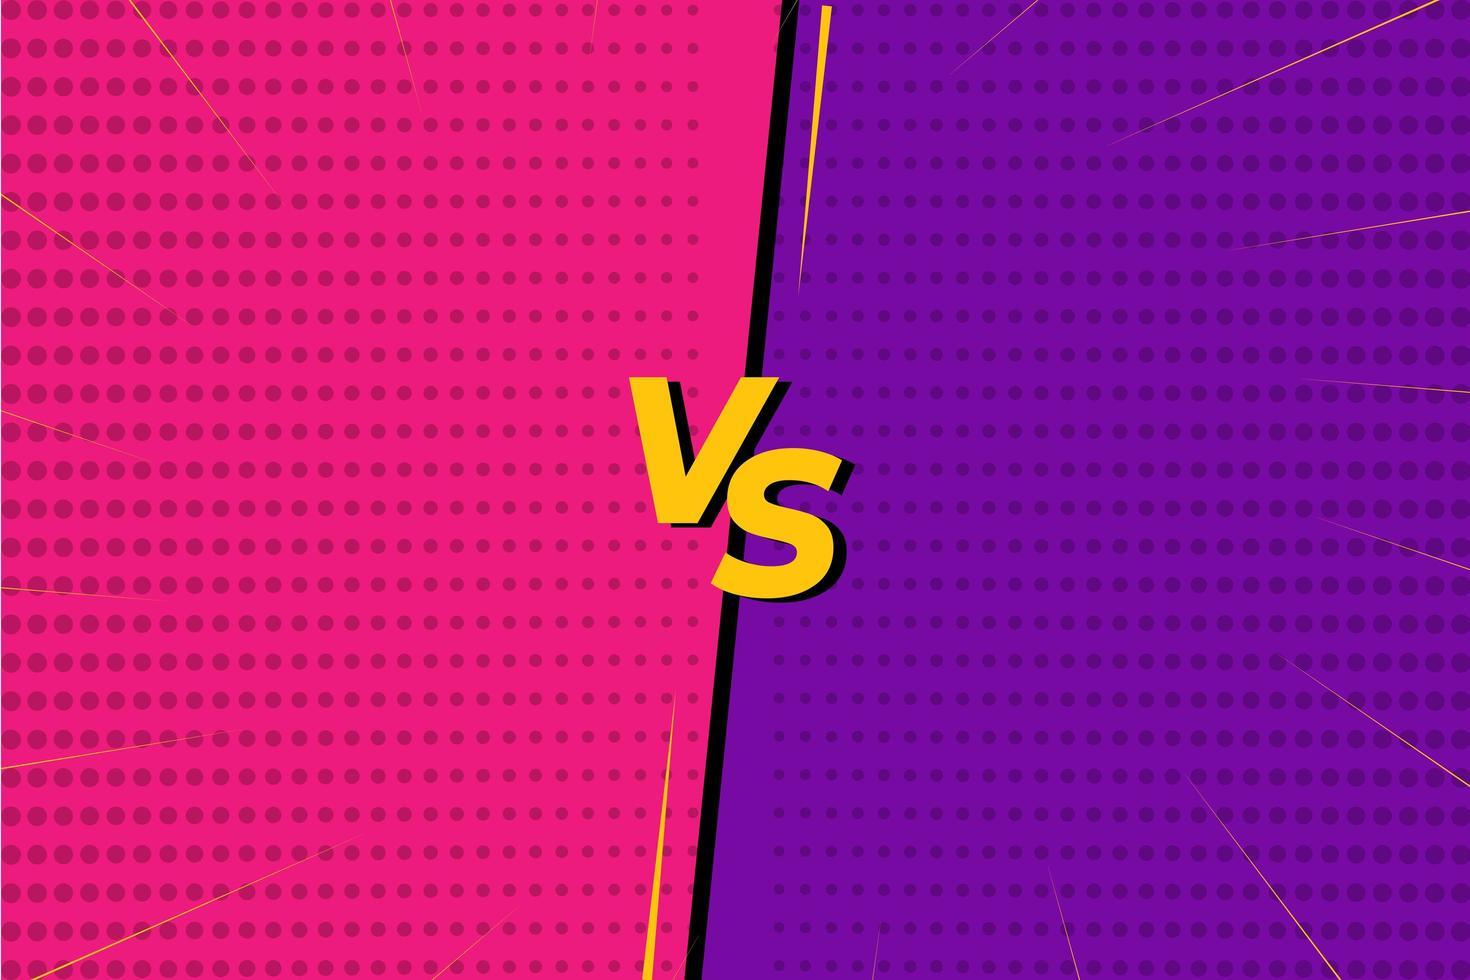 versus vs battle schermachtergrond roze en paars in komische stijl vector